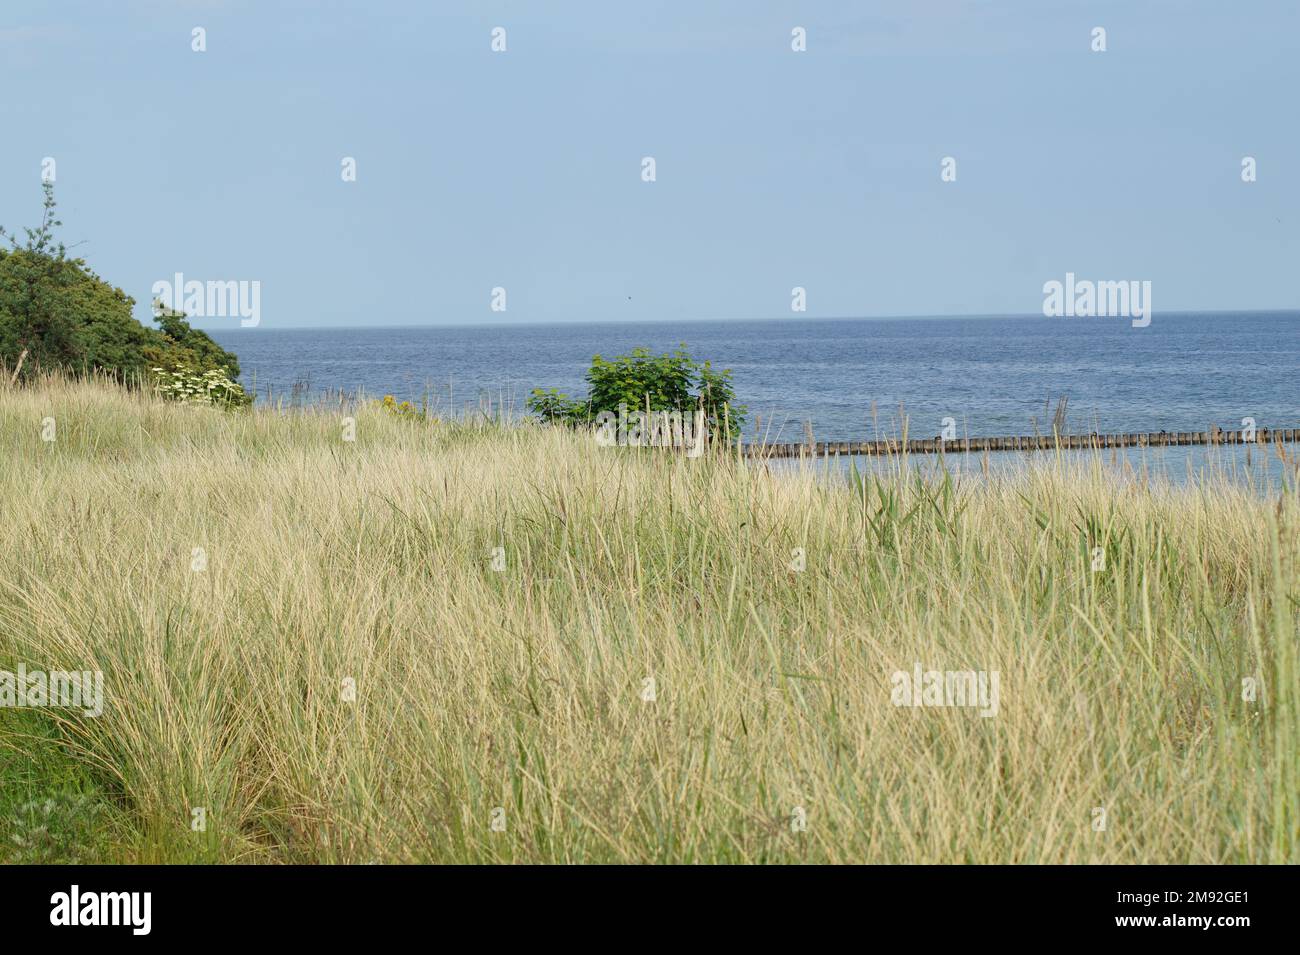 La vue sur la mer Baltique Banque D'Images